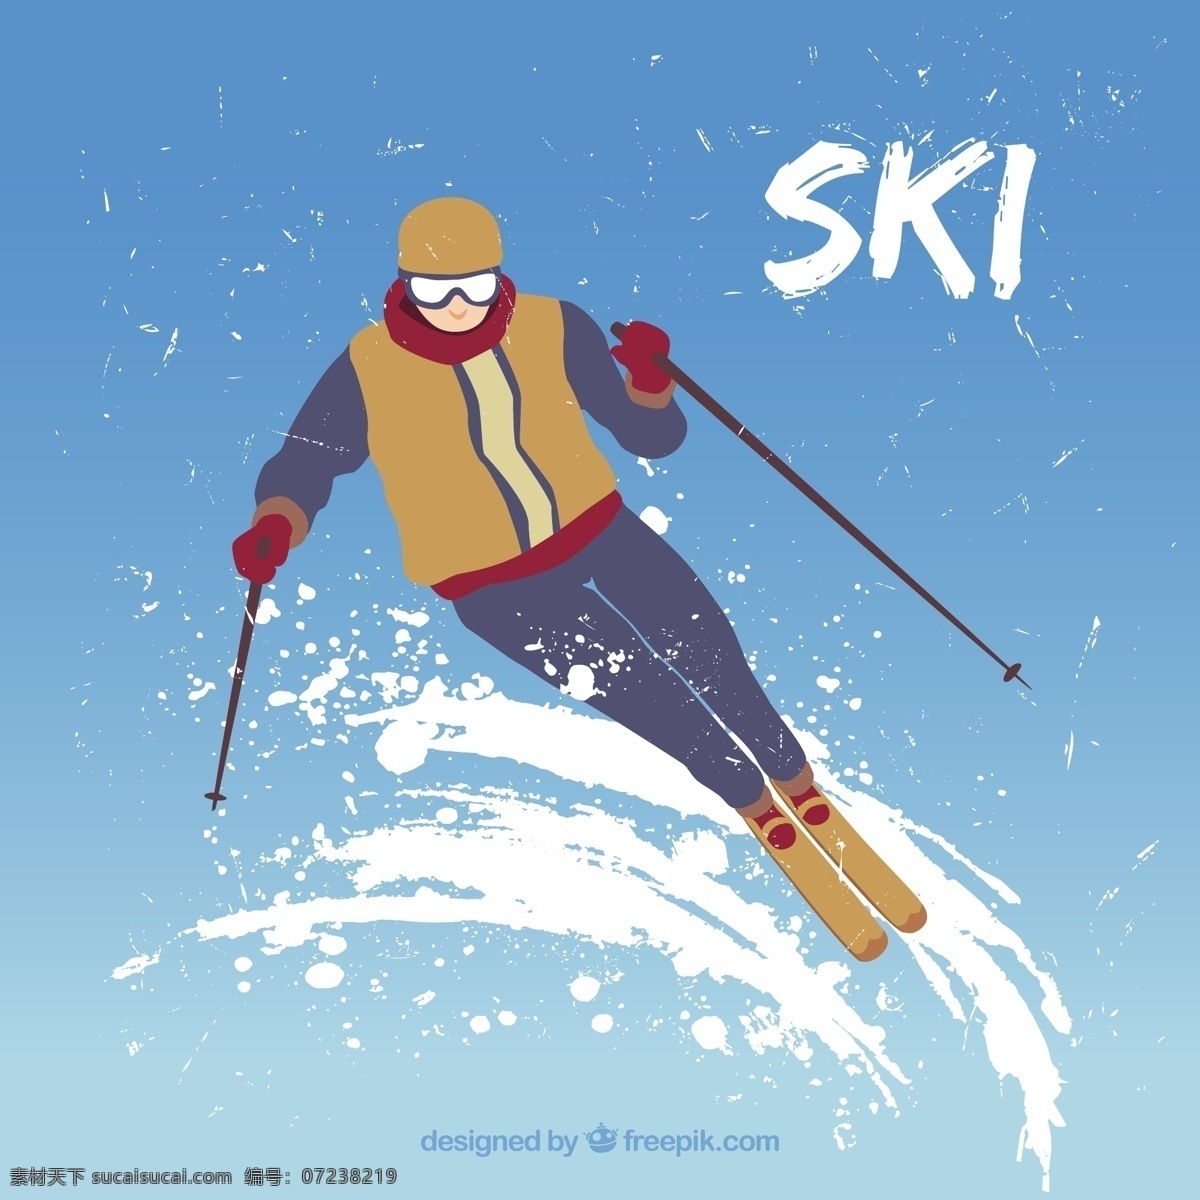 滑雪者的插图 运动 雪 冬天 滑雪 插图 冷 蓝色